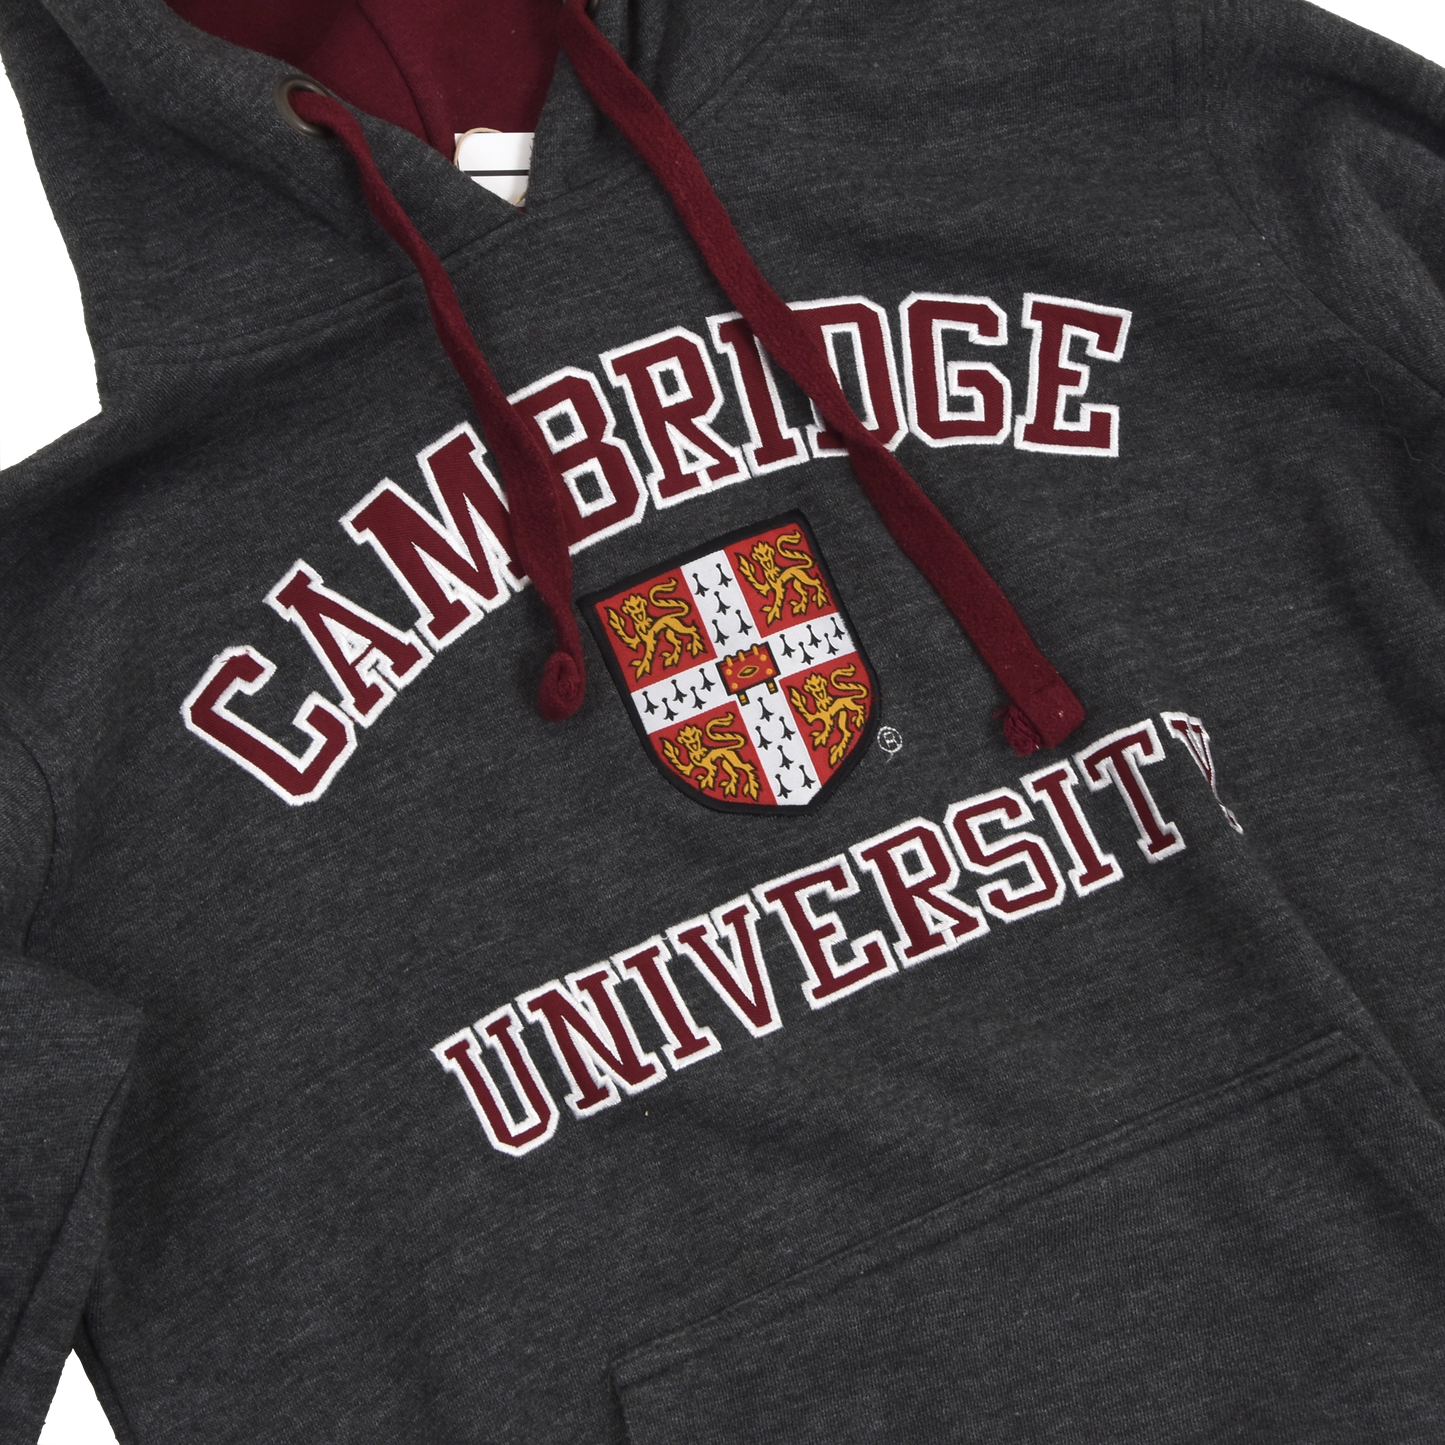 University of Cambridge Hooded Sweatshirt Size S - Grey